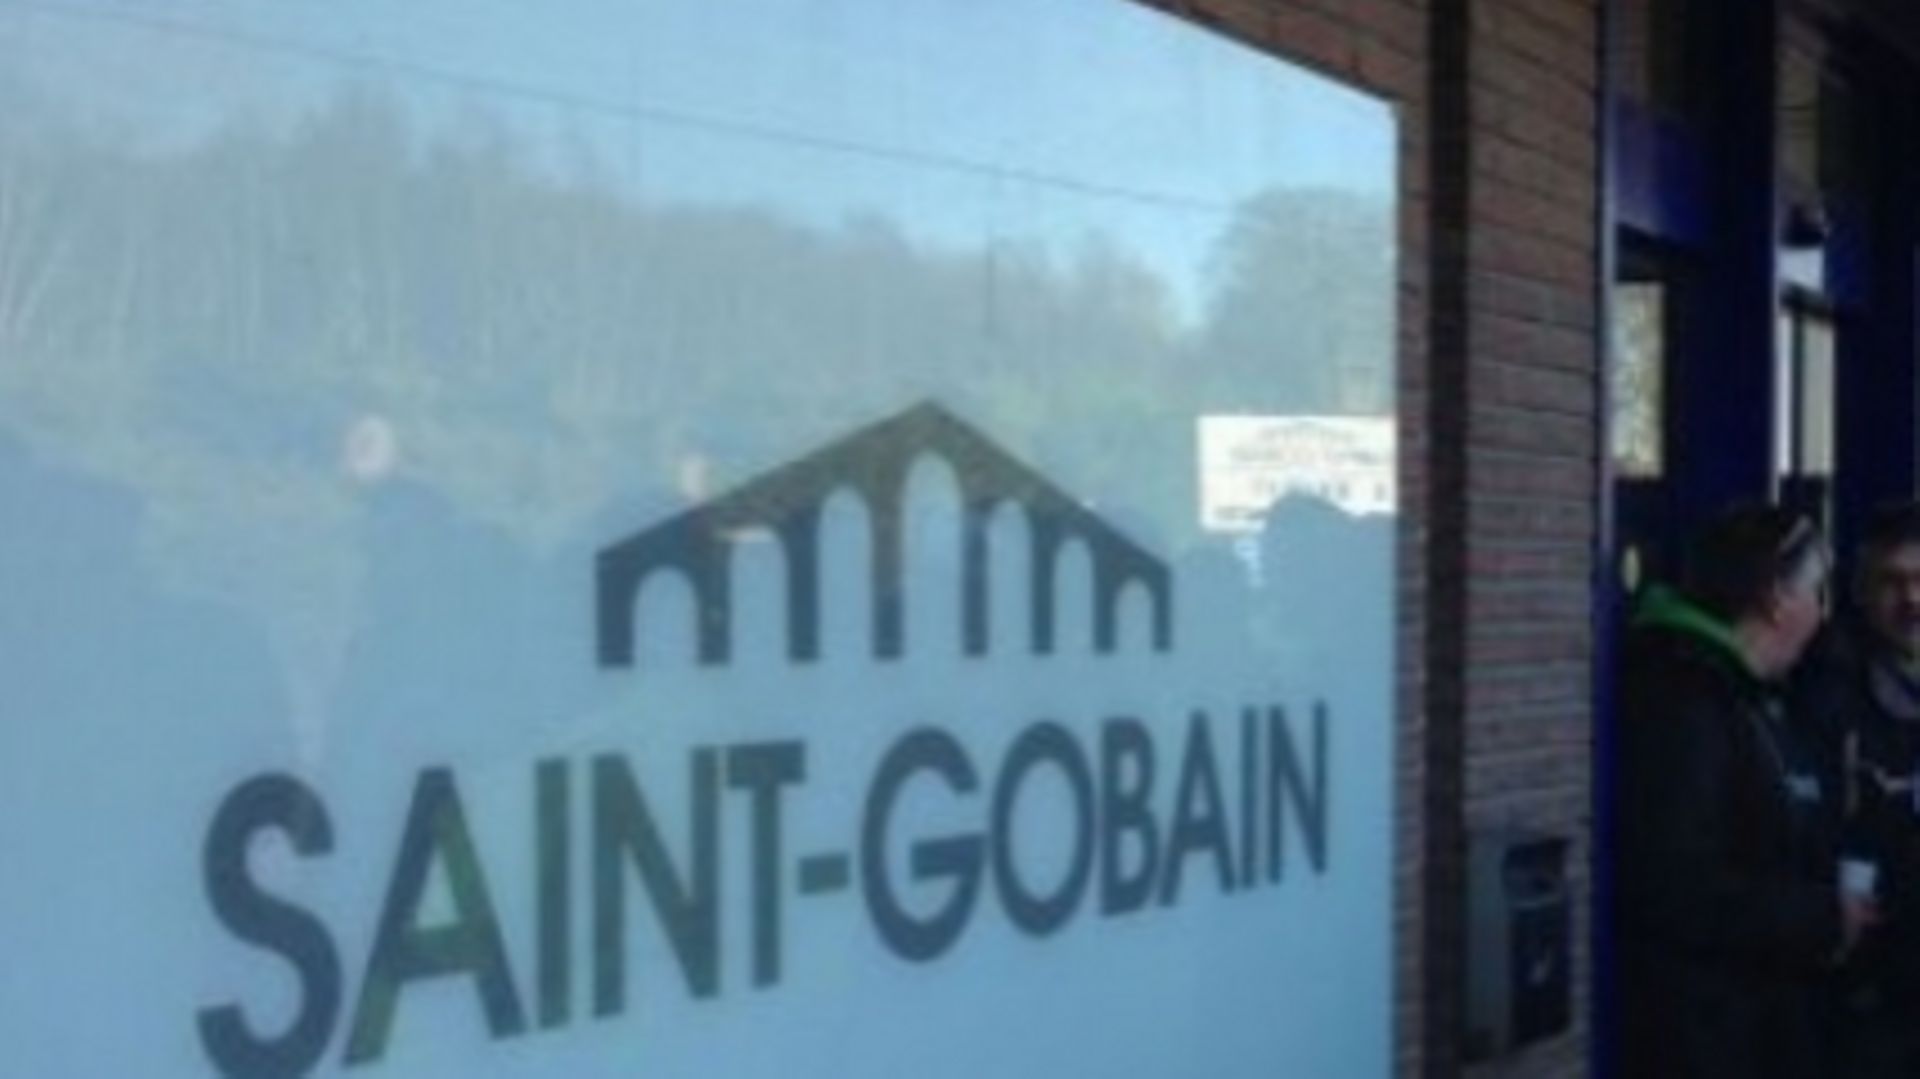 Saint-Gobain victime de cyberattaque.